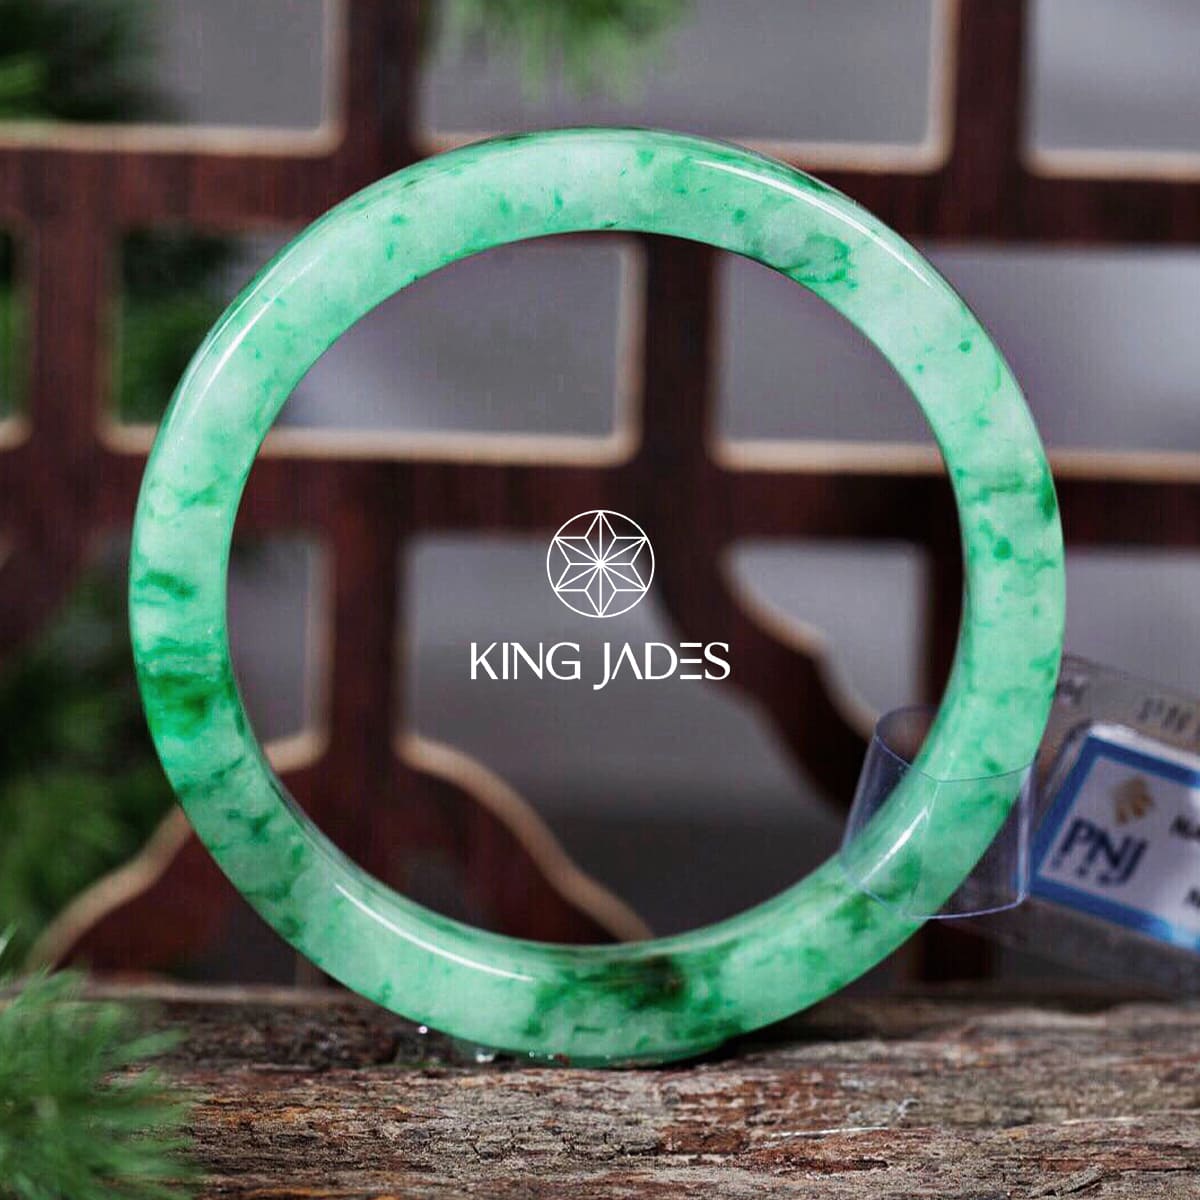  Vòng Ngọc Sơn Thủy King Jade 022 - Sắc nước hương trời